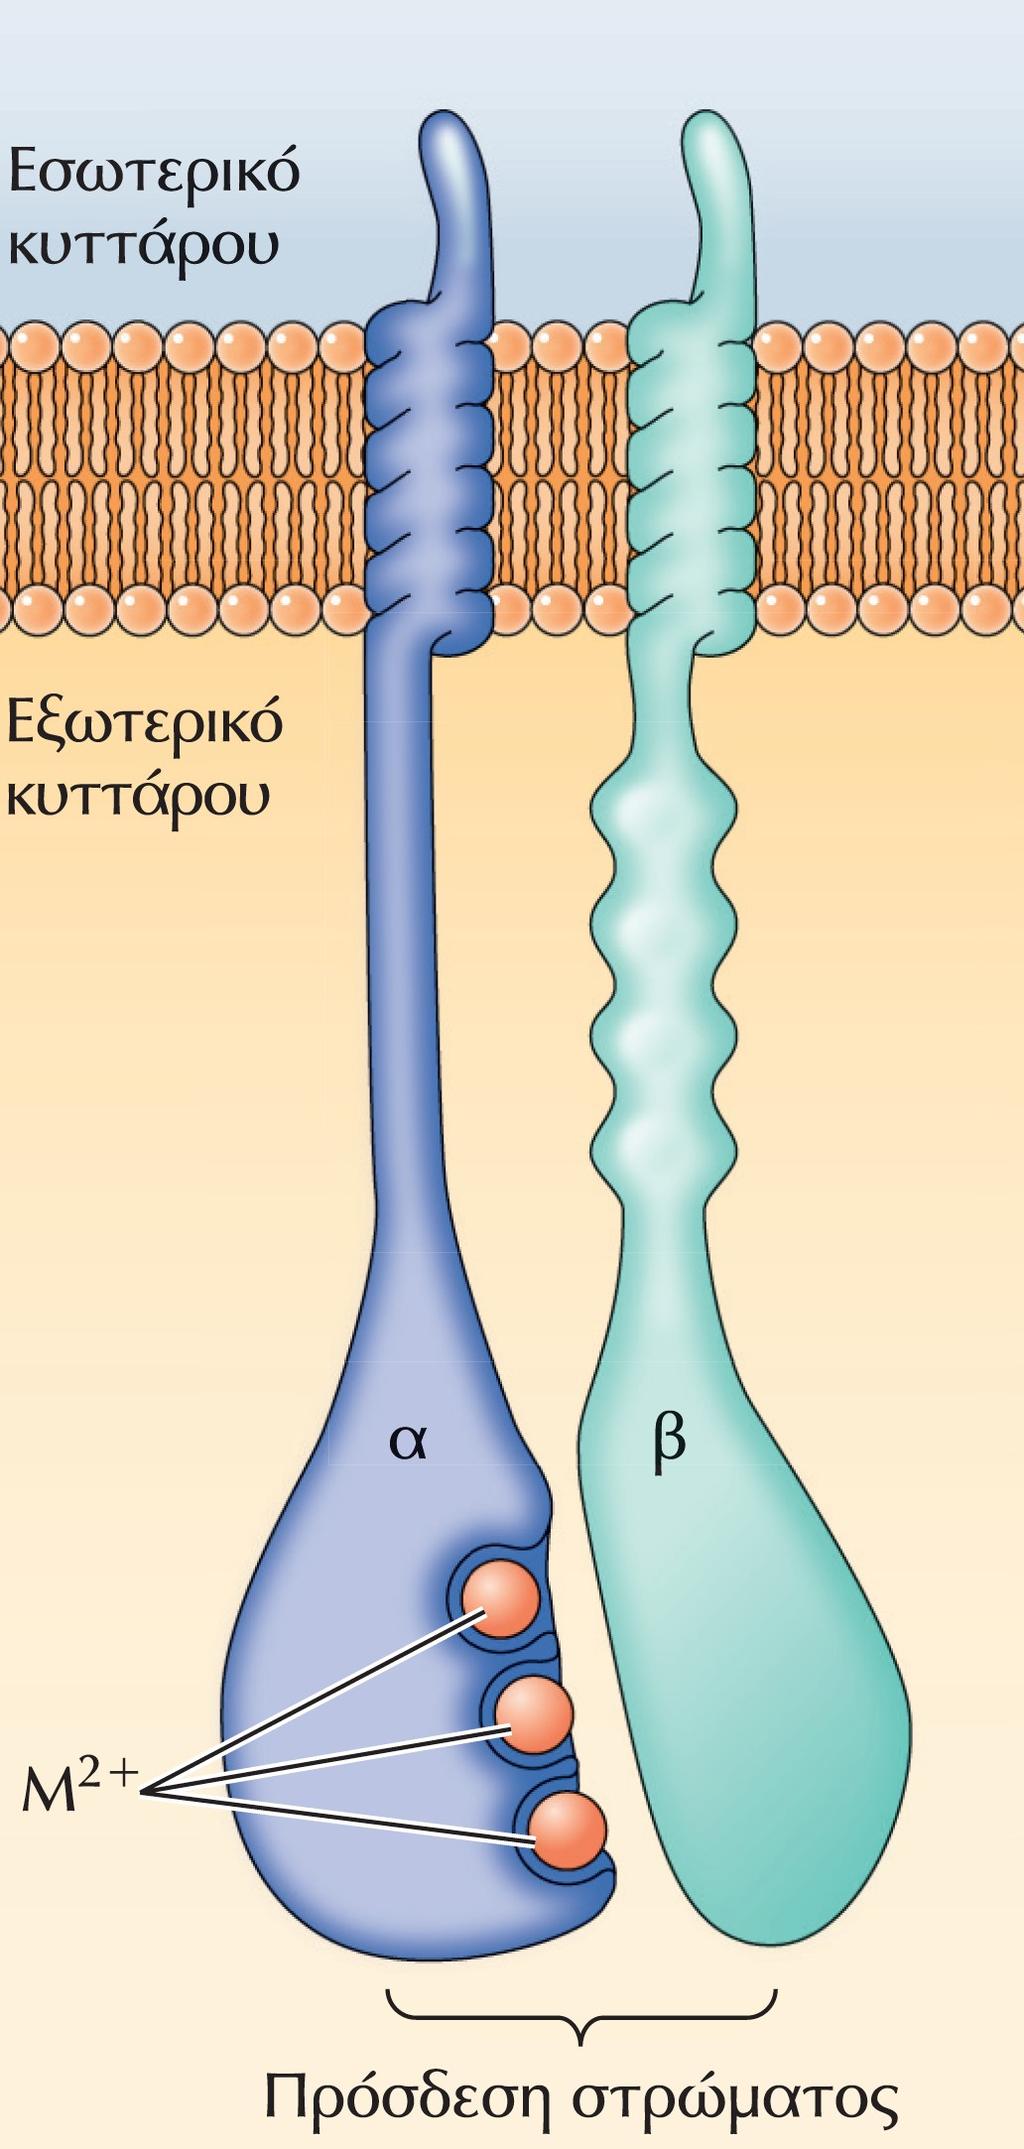 Δομή των ιντεγκρινών. Οι ιντεγκρίνες είναι ετεροδιμερή αποτελούμενα από δύο διαμεμβρανικές υπομονάδες, τις α και β.